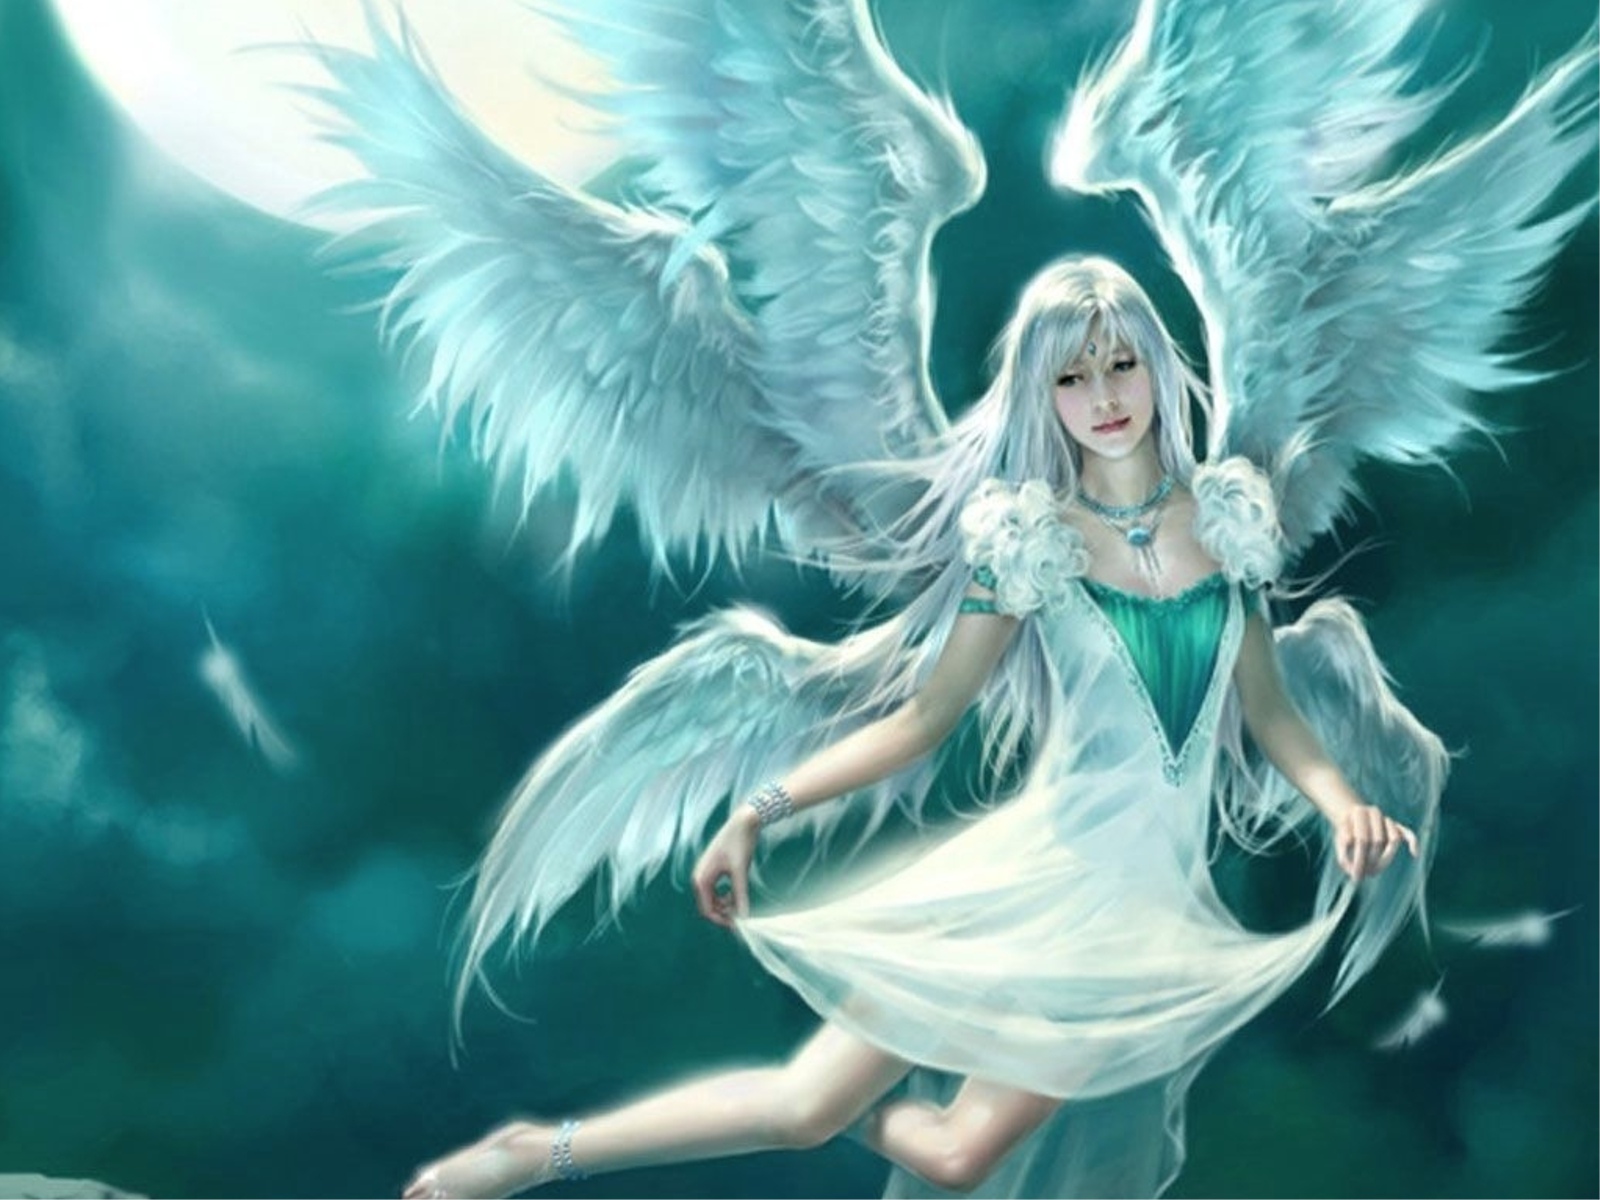 papel pintado engel,ángel,cg artwork,personaje de ficción,criatura sobrenatural,mitología